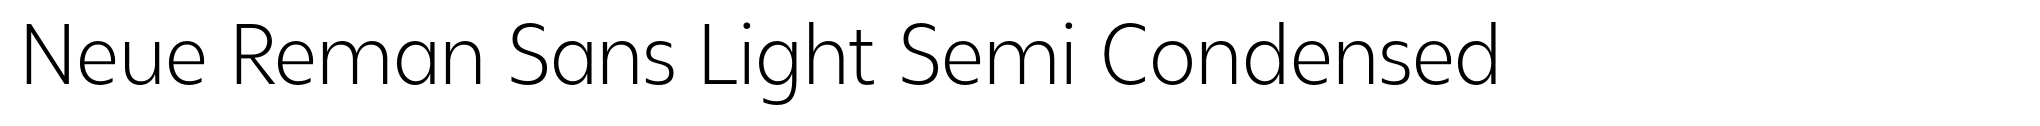 Neue Reman Sans Light Semi Condensed image